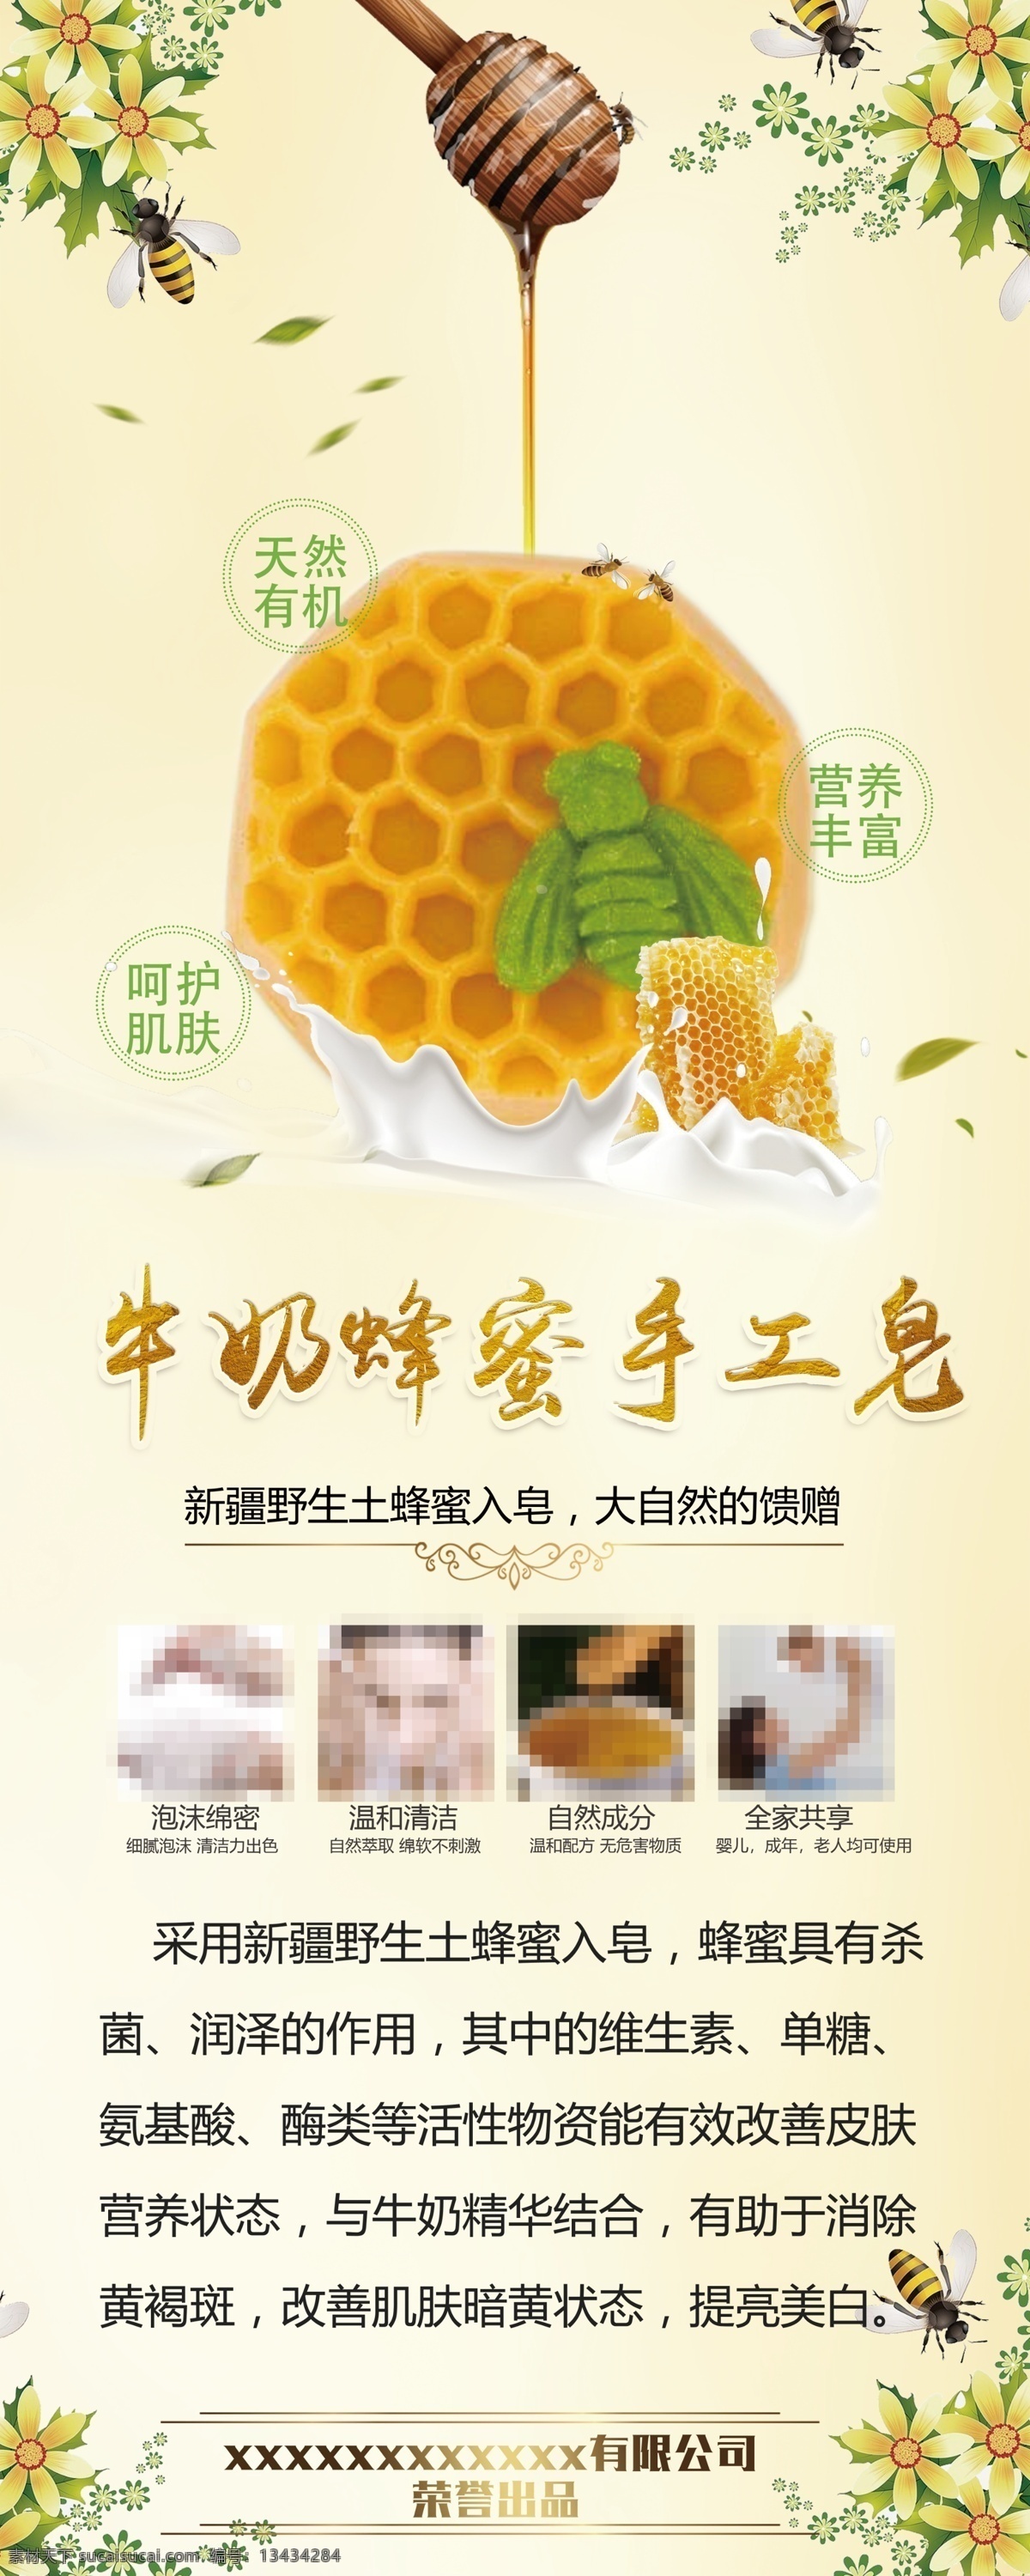 牛奶 蜂蜜 手工 皂 手工皂 展架 海报 简洁 大气 高端 蜂蜜牛奶 产品介绍 香皂 化妆品